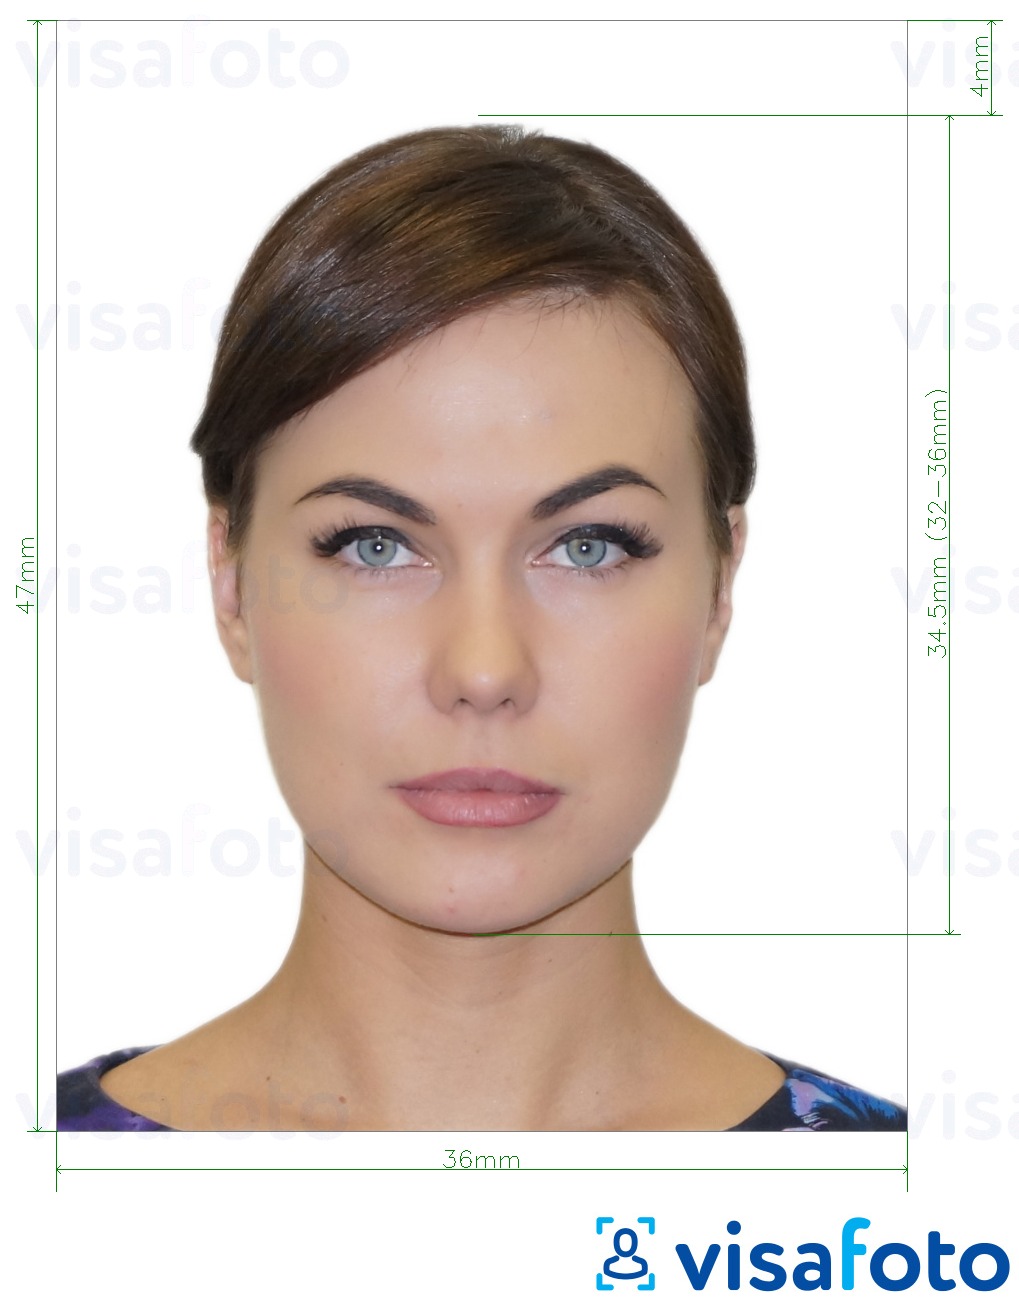 Ejemplo de foto para visa albanesa 47x36mm con la especificación del tamaño exacto